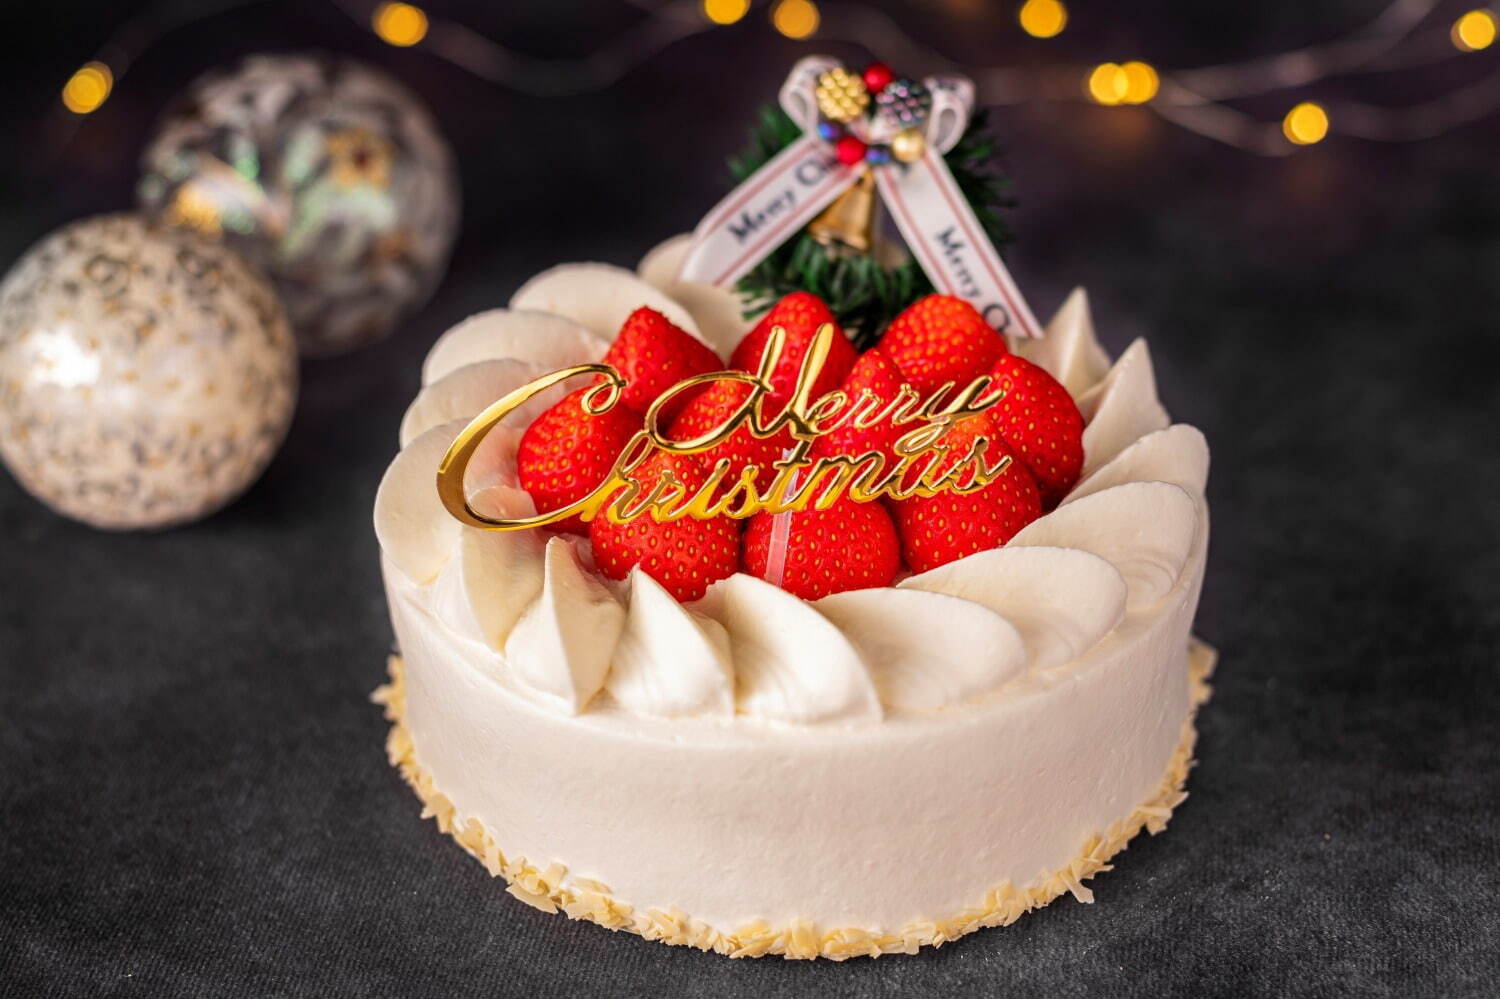 「クリスマスストロベリーショートケーキ」6,500円